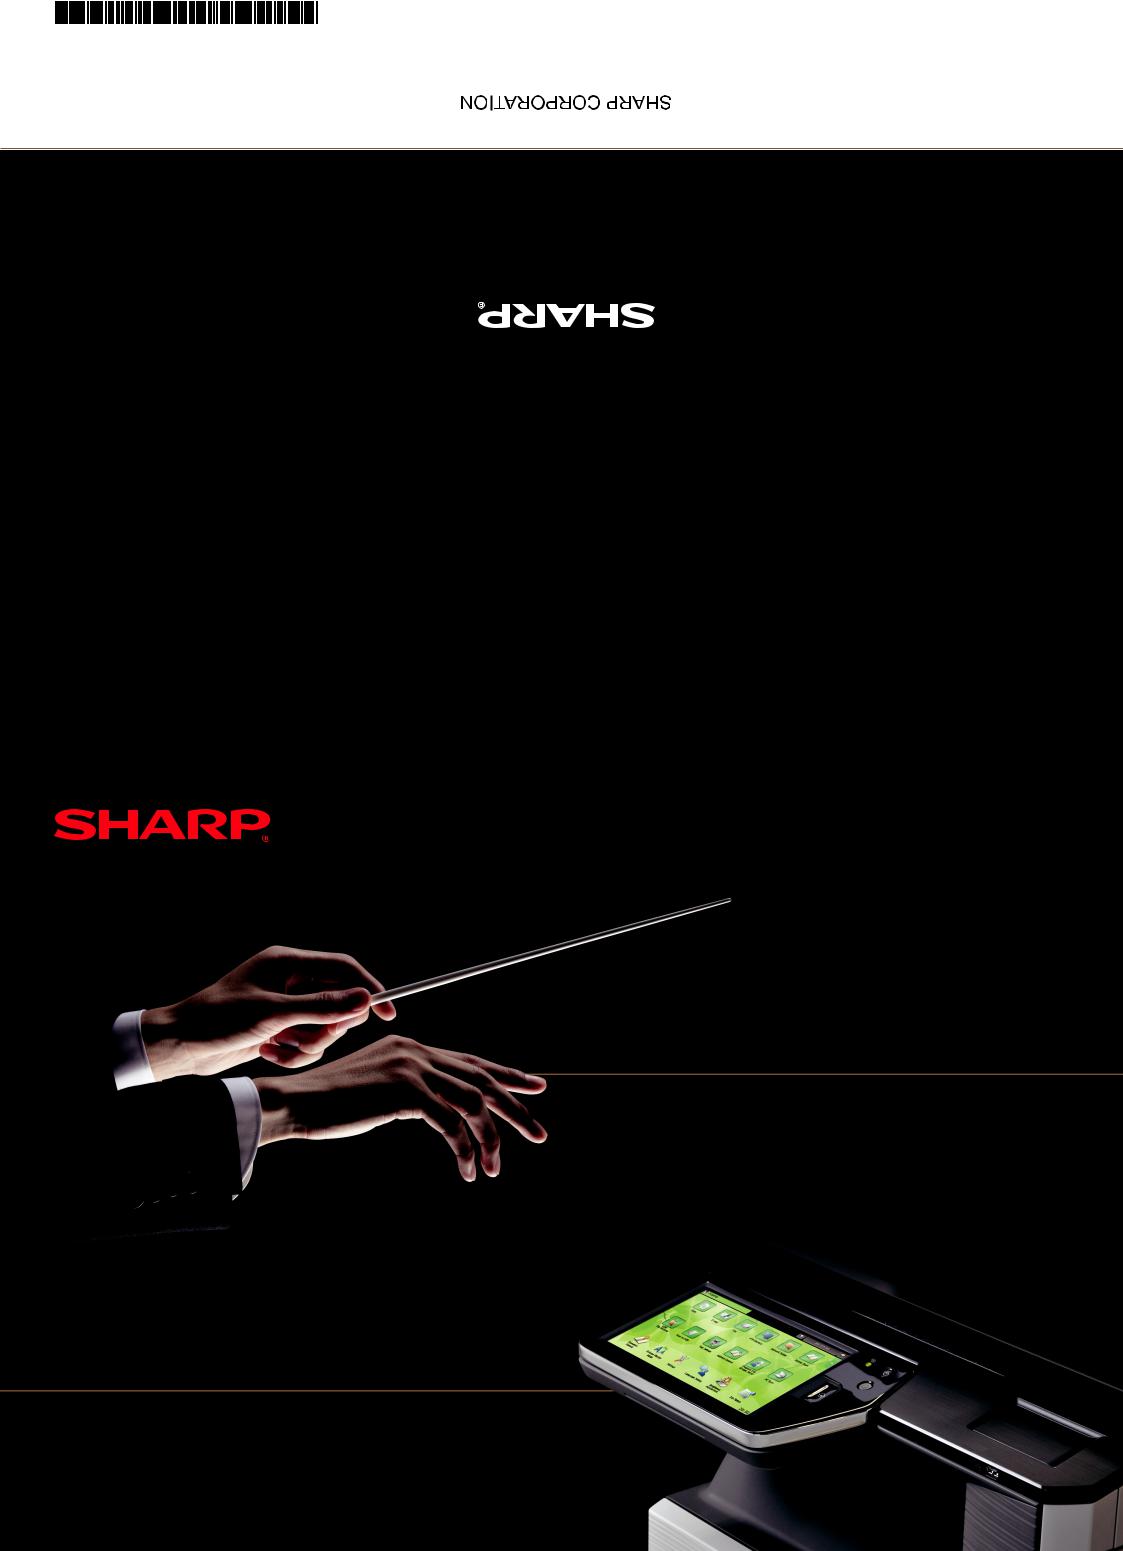 Sharp MX-2610N, MX-3110N, MX-3610N User Manual